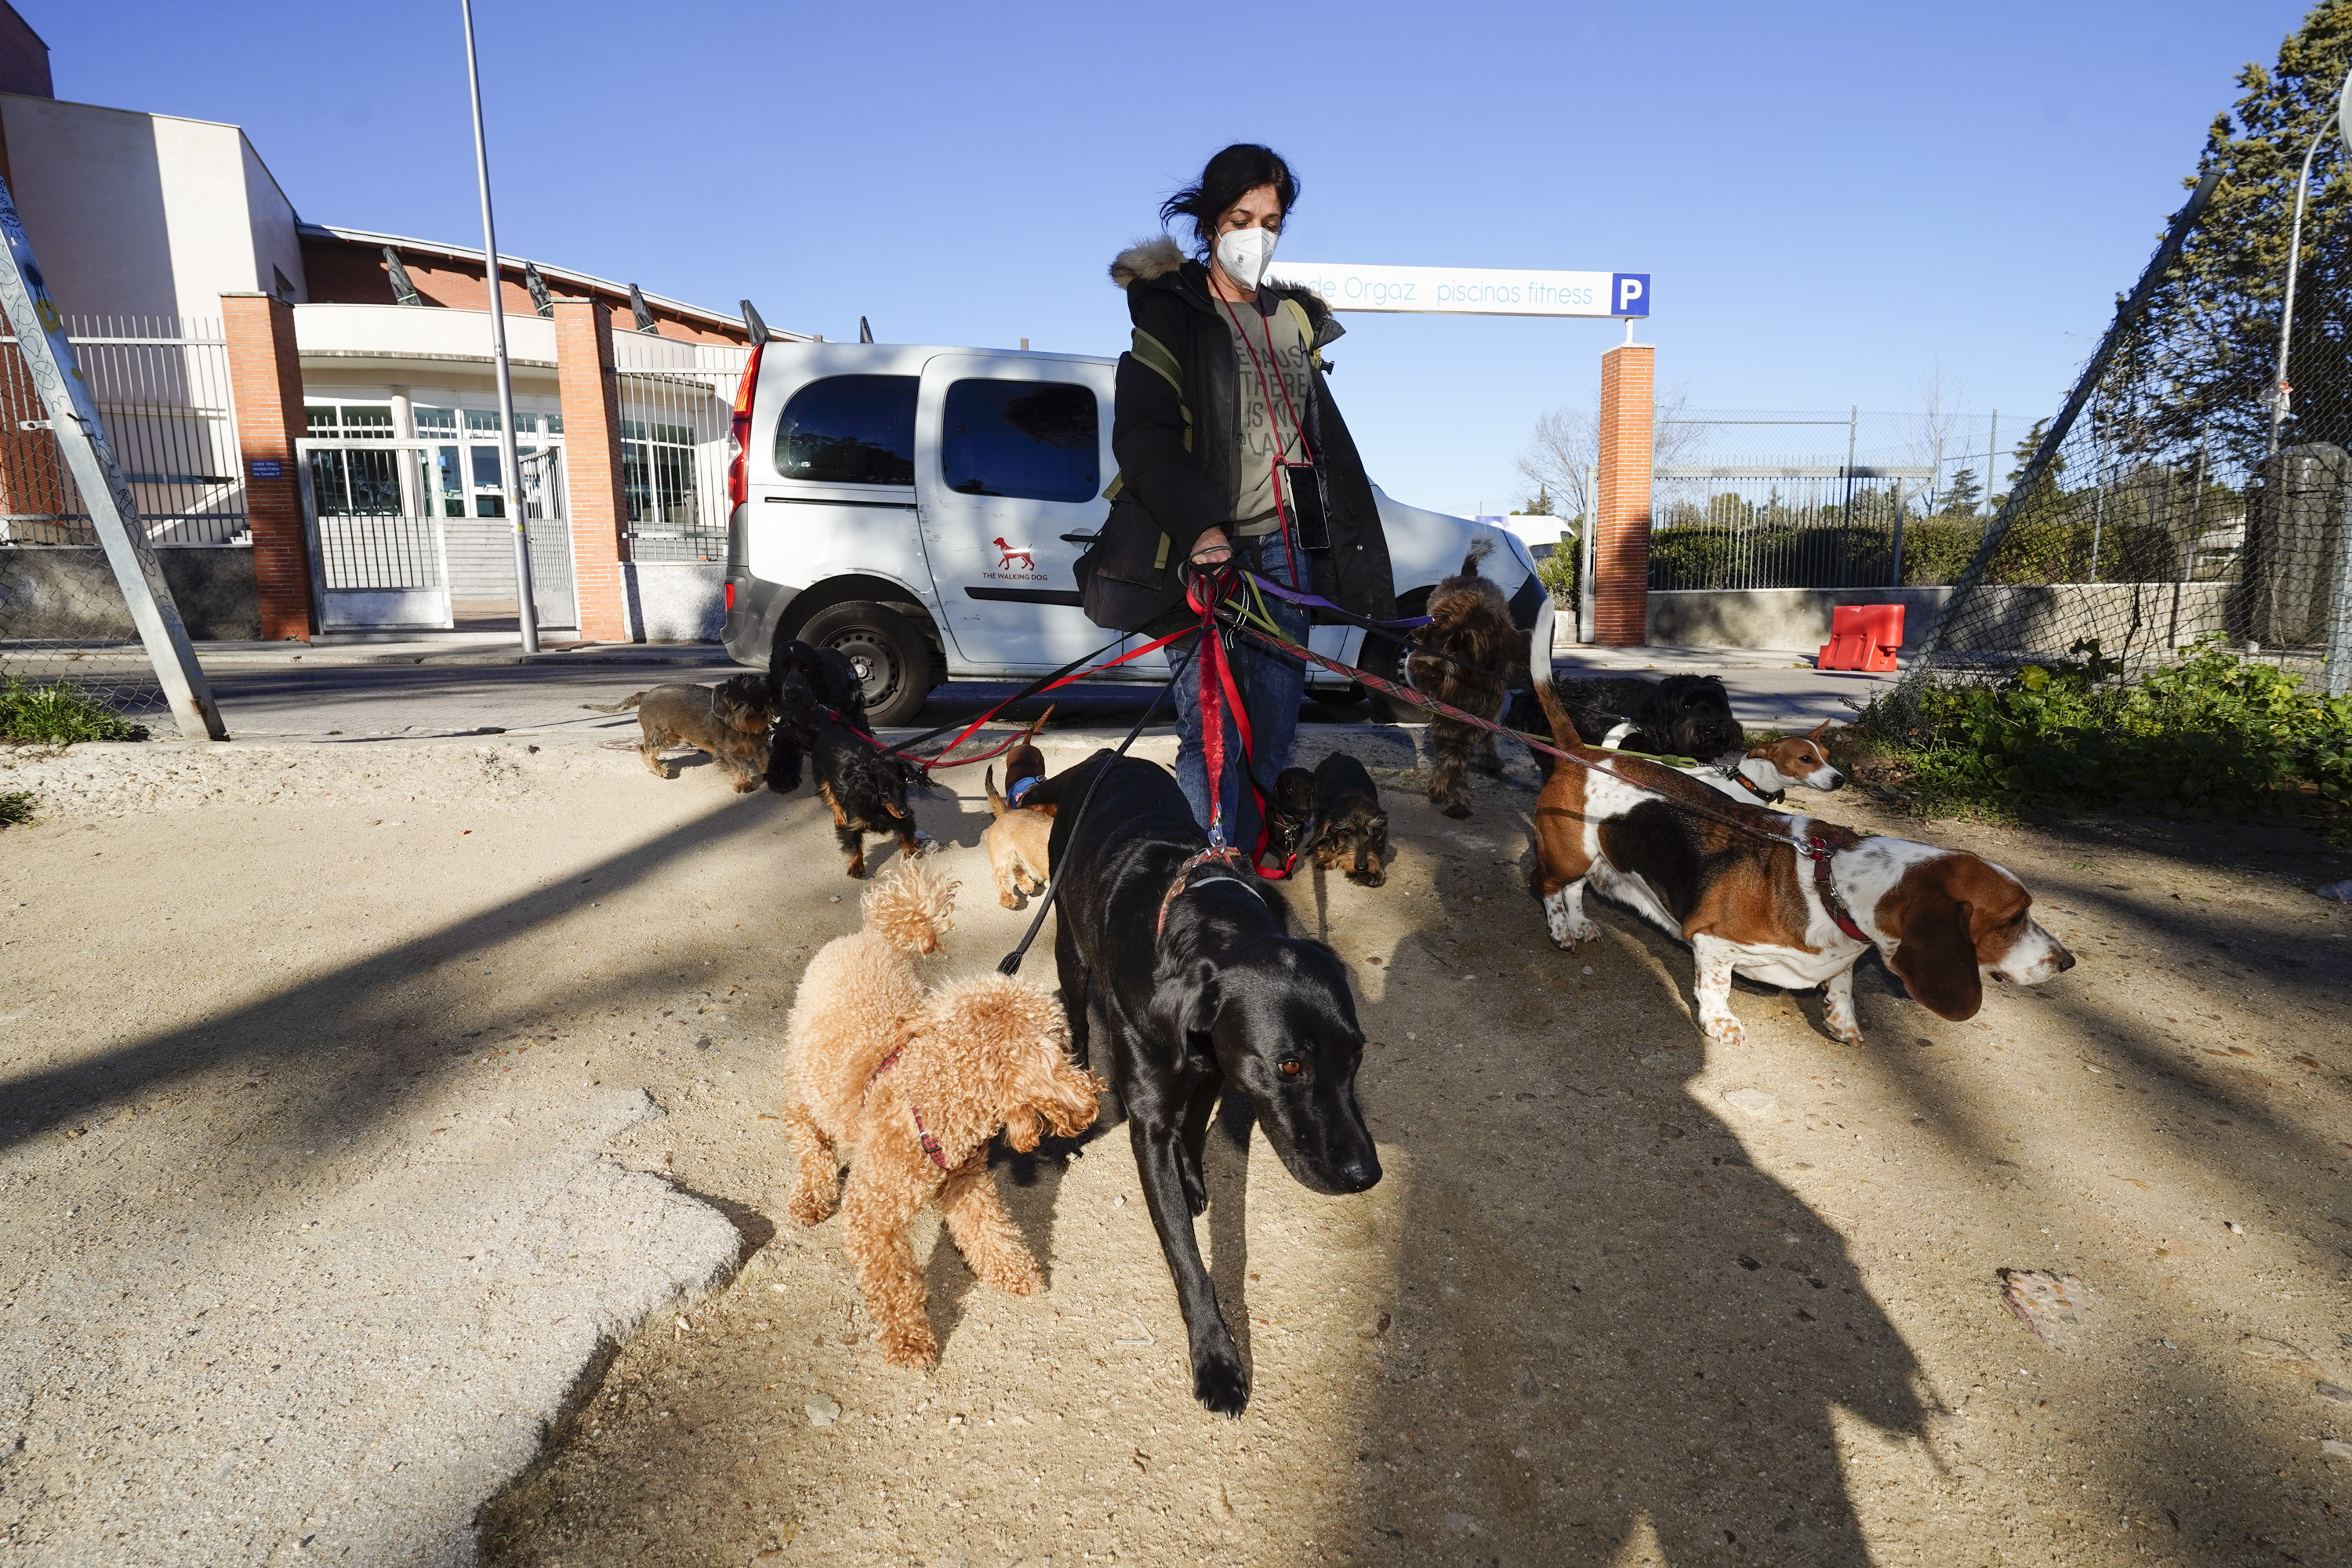 puente muelle Pantera Paseadores de perros, el negocio en auge en los barrios 'ricos' de Madrid:  "¿Humanizar a los animales? No les paso una" | Madrid